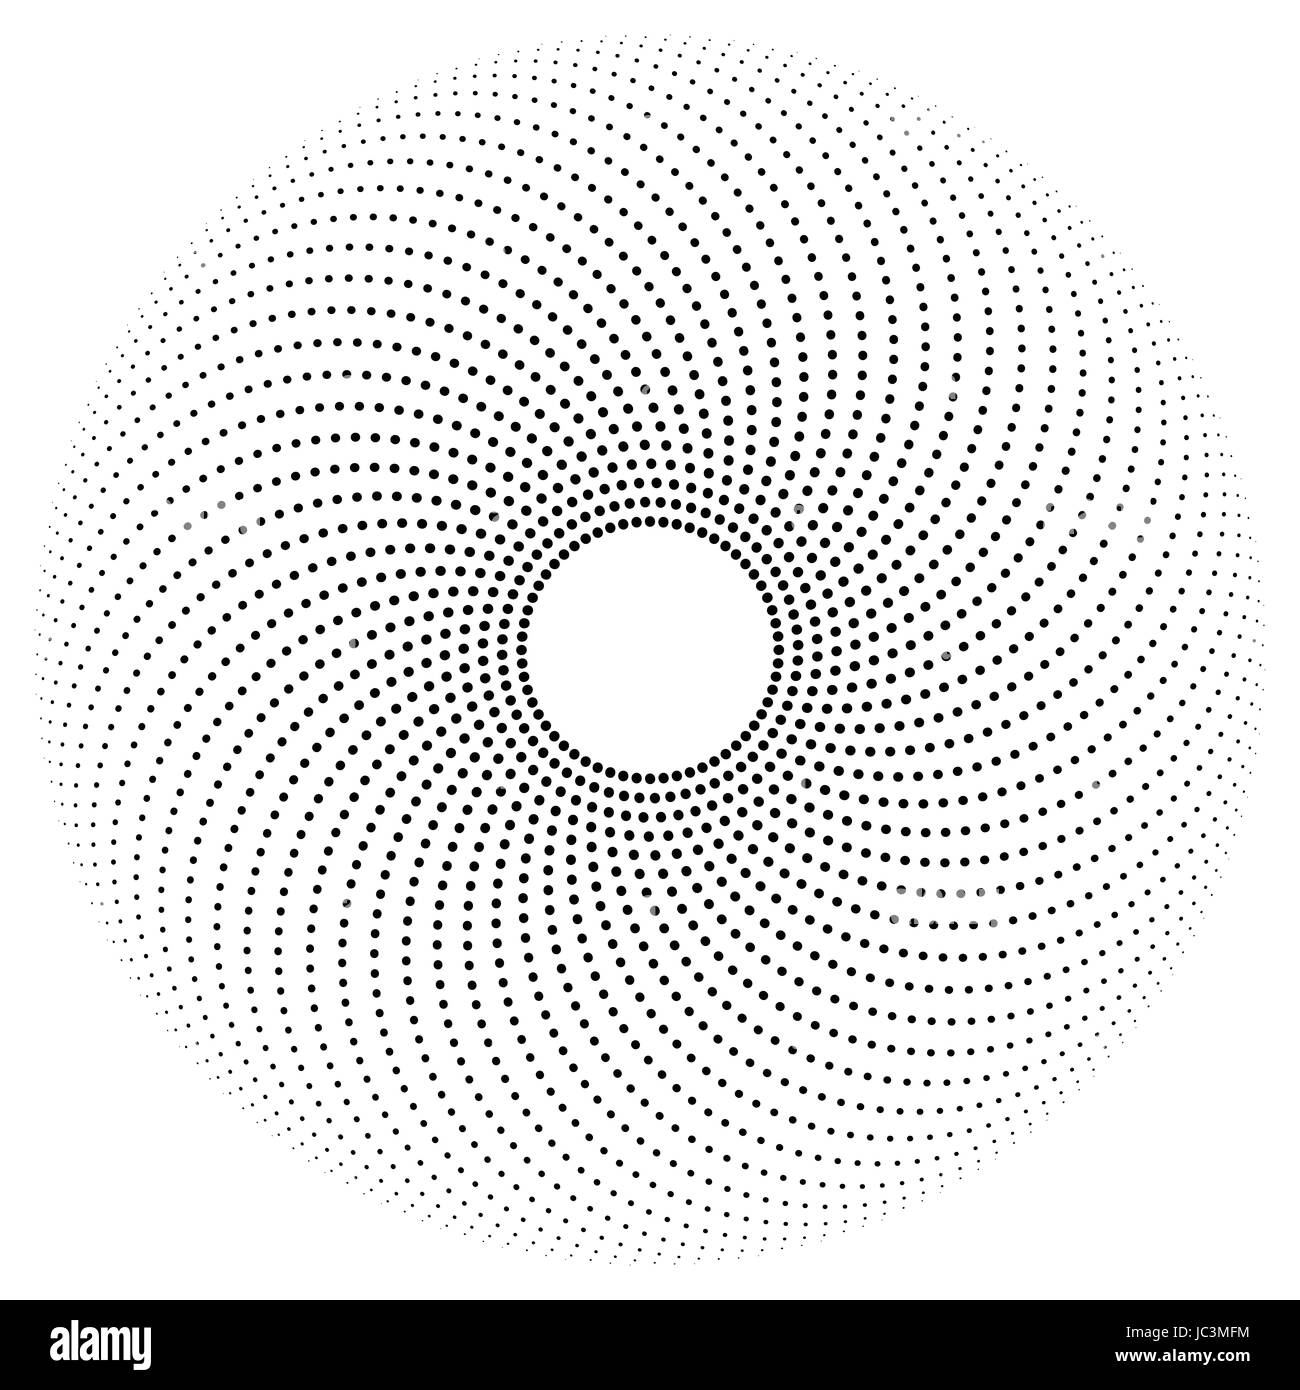 Les points noirs sur les chemins d'un demi-cercle formant un motif. Cercle avec des points de différentes tailles avec un trou au centre. Banque D'Images